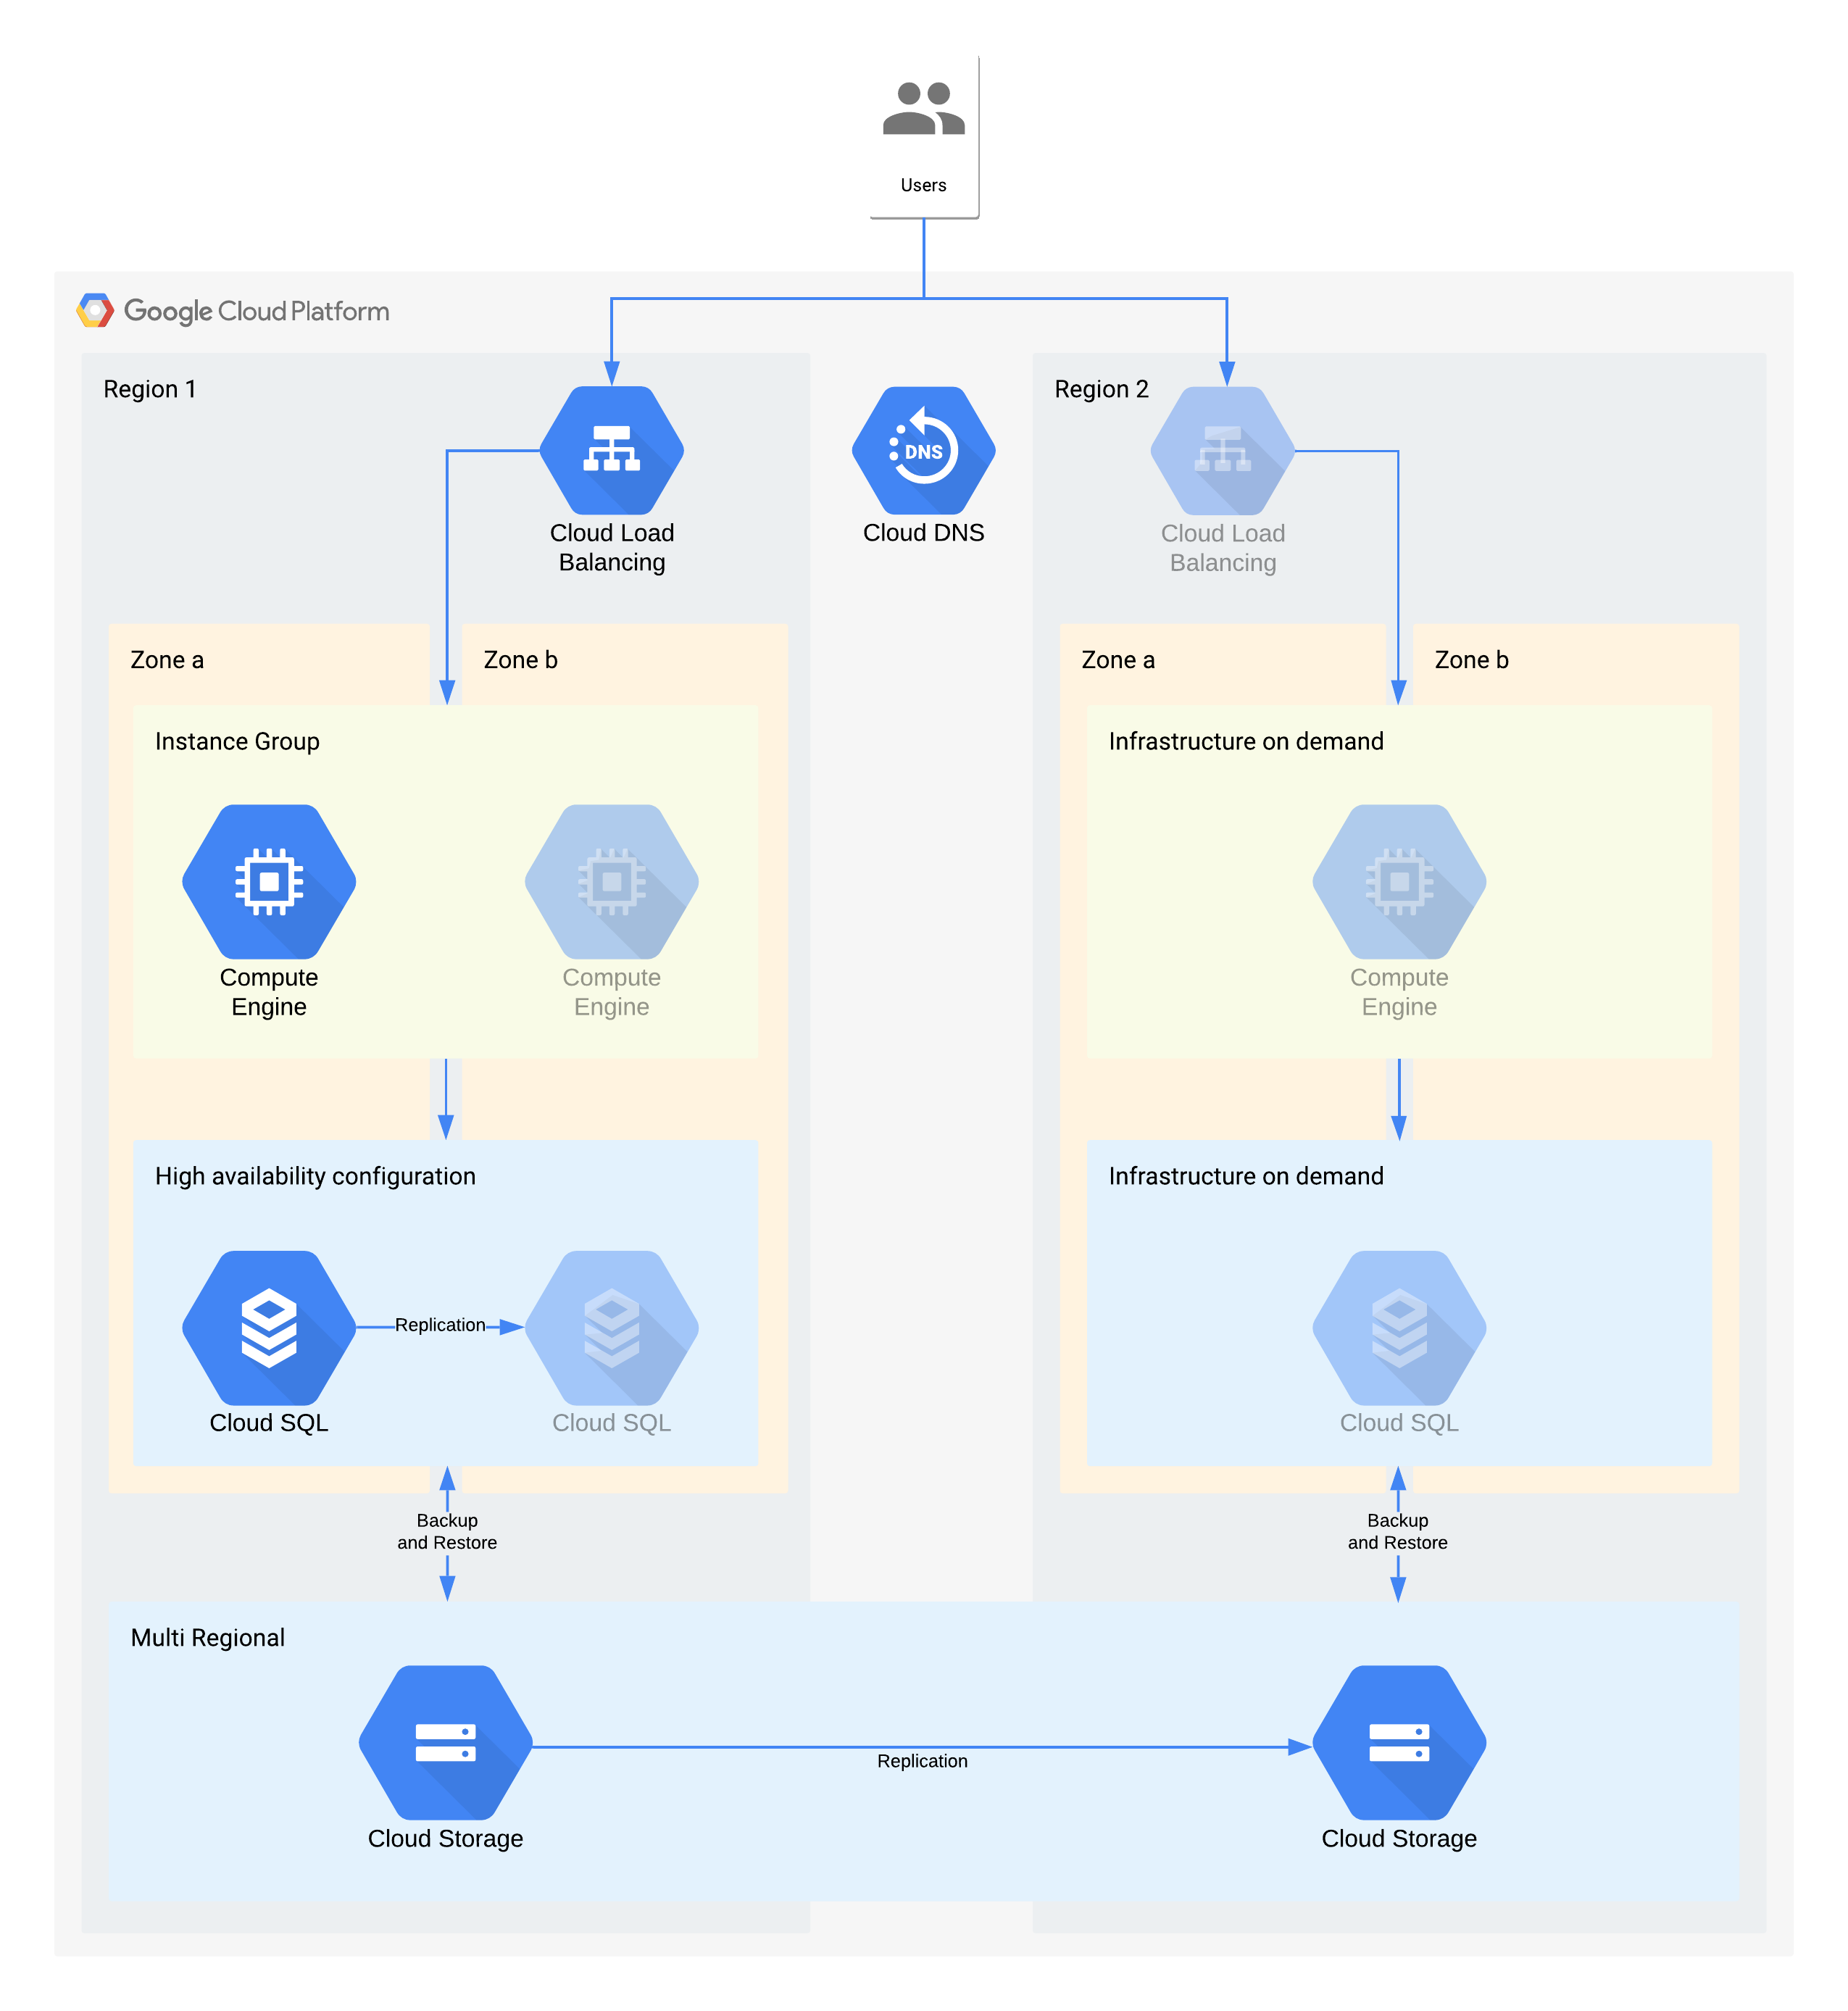 Um exemplo de arquitetura de nível 3 usando os produtos do Google Cloud